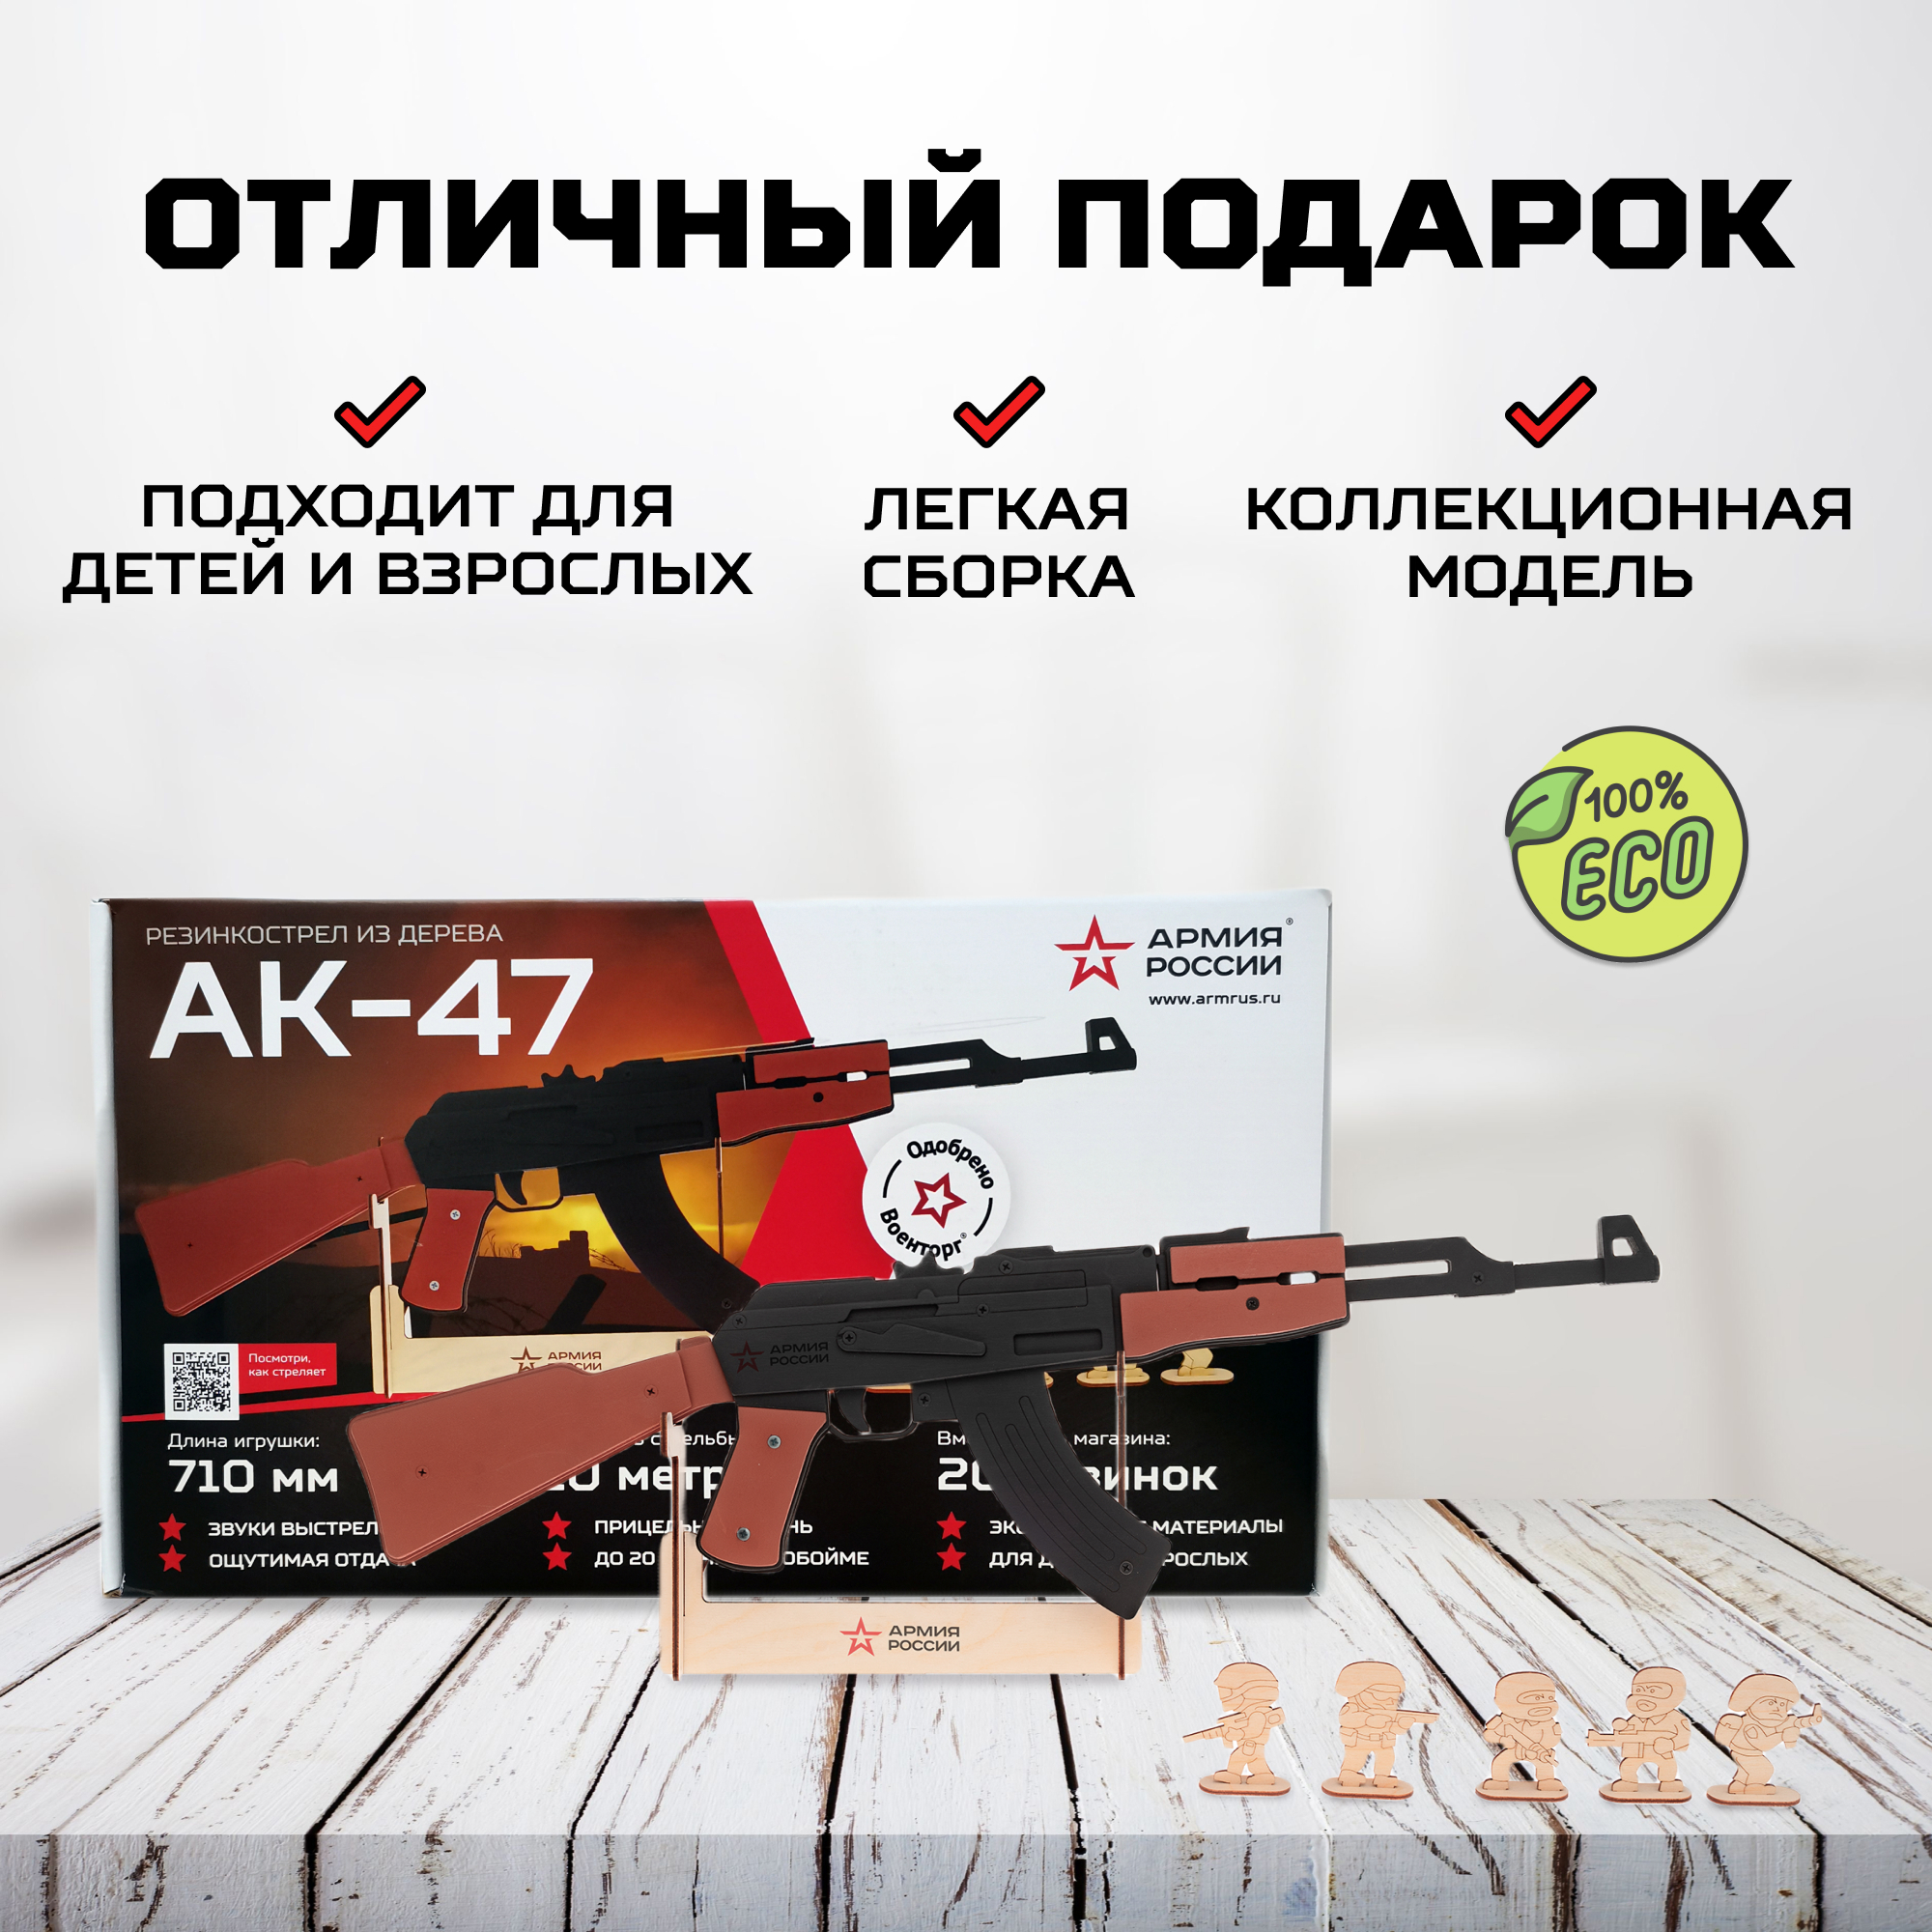 Автомат Армия России Резинкострел из дерева АК-47 - фото 3